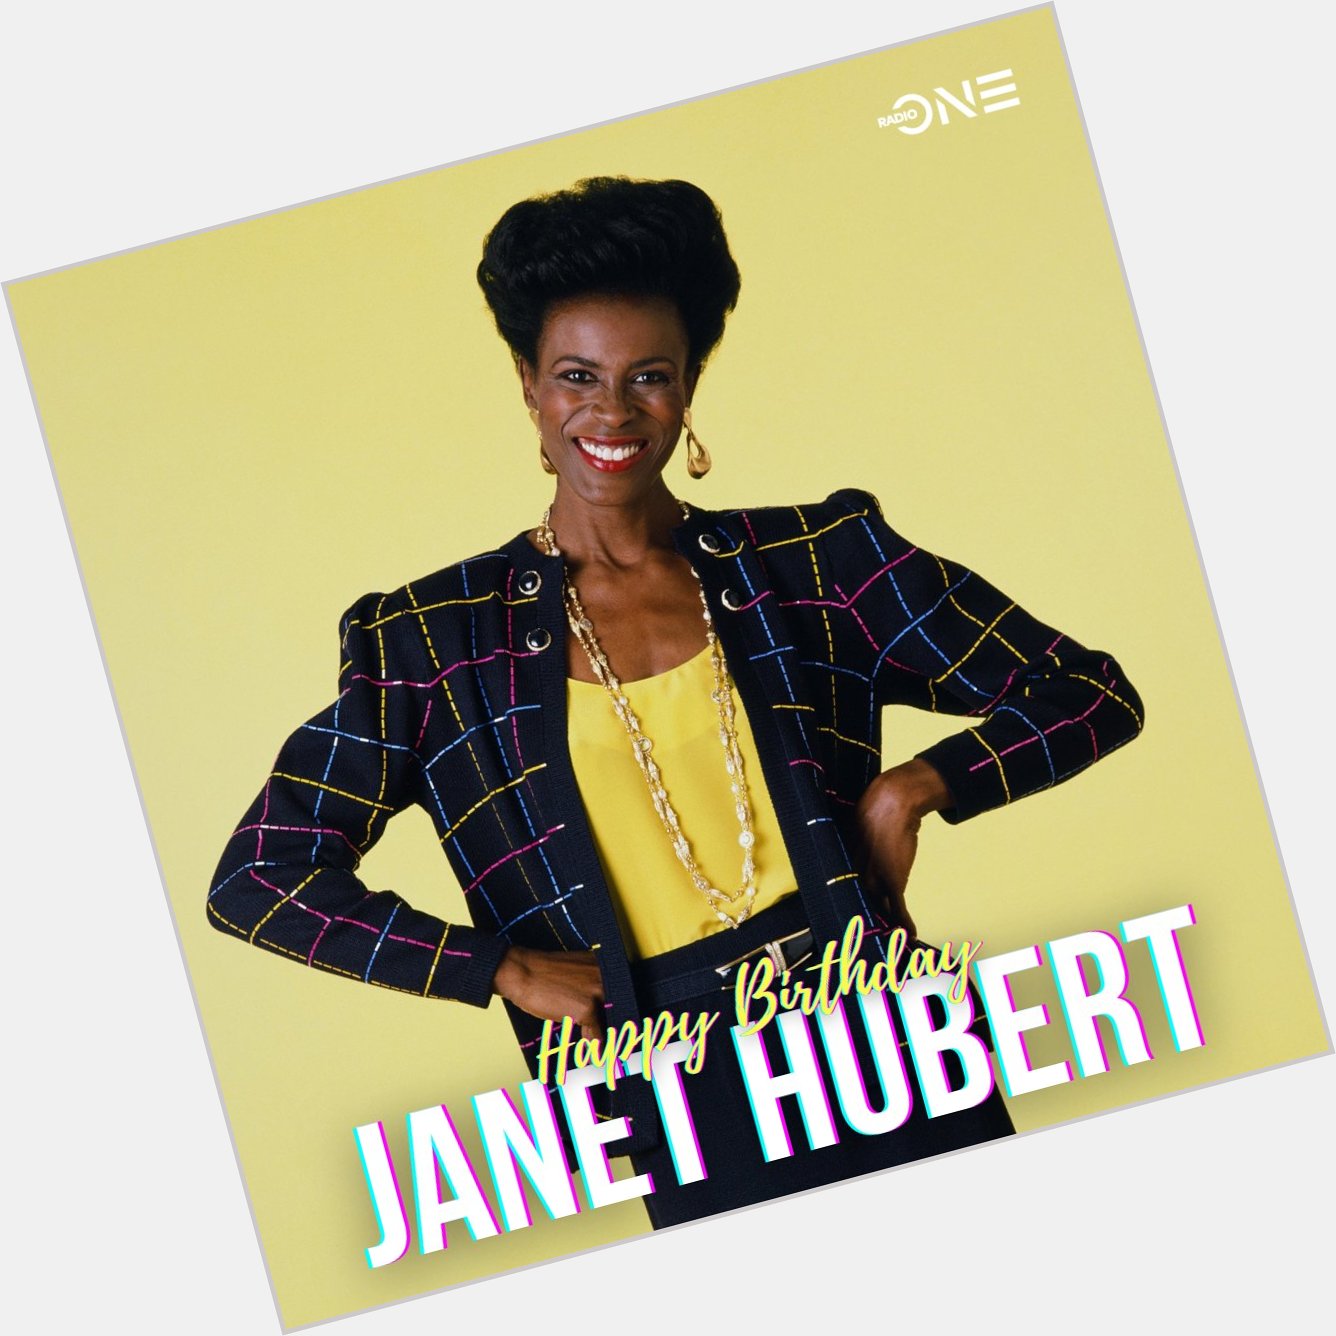 Wishing Janet Hubert a Happy 65th Birthday 